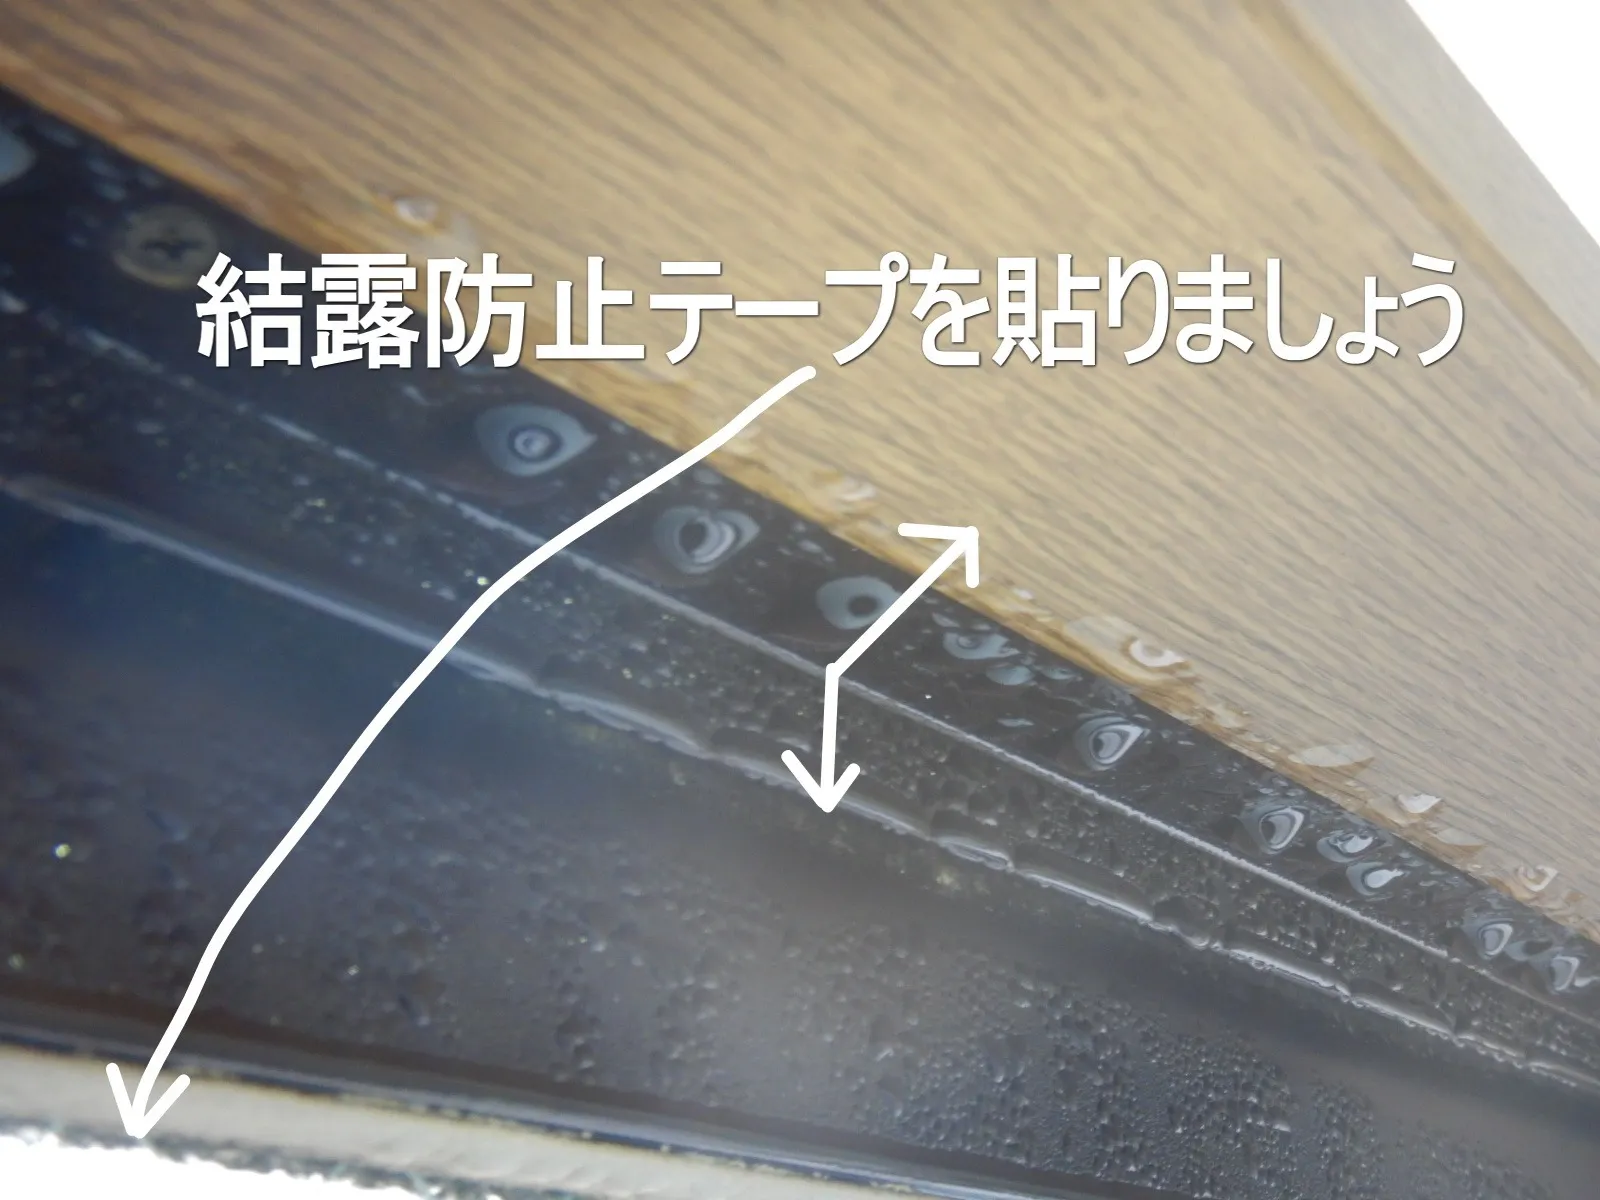 窓とアルミサッシ結露による結露防止テープ活用でのカビ対策